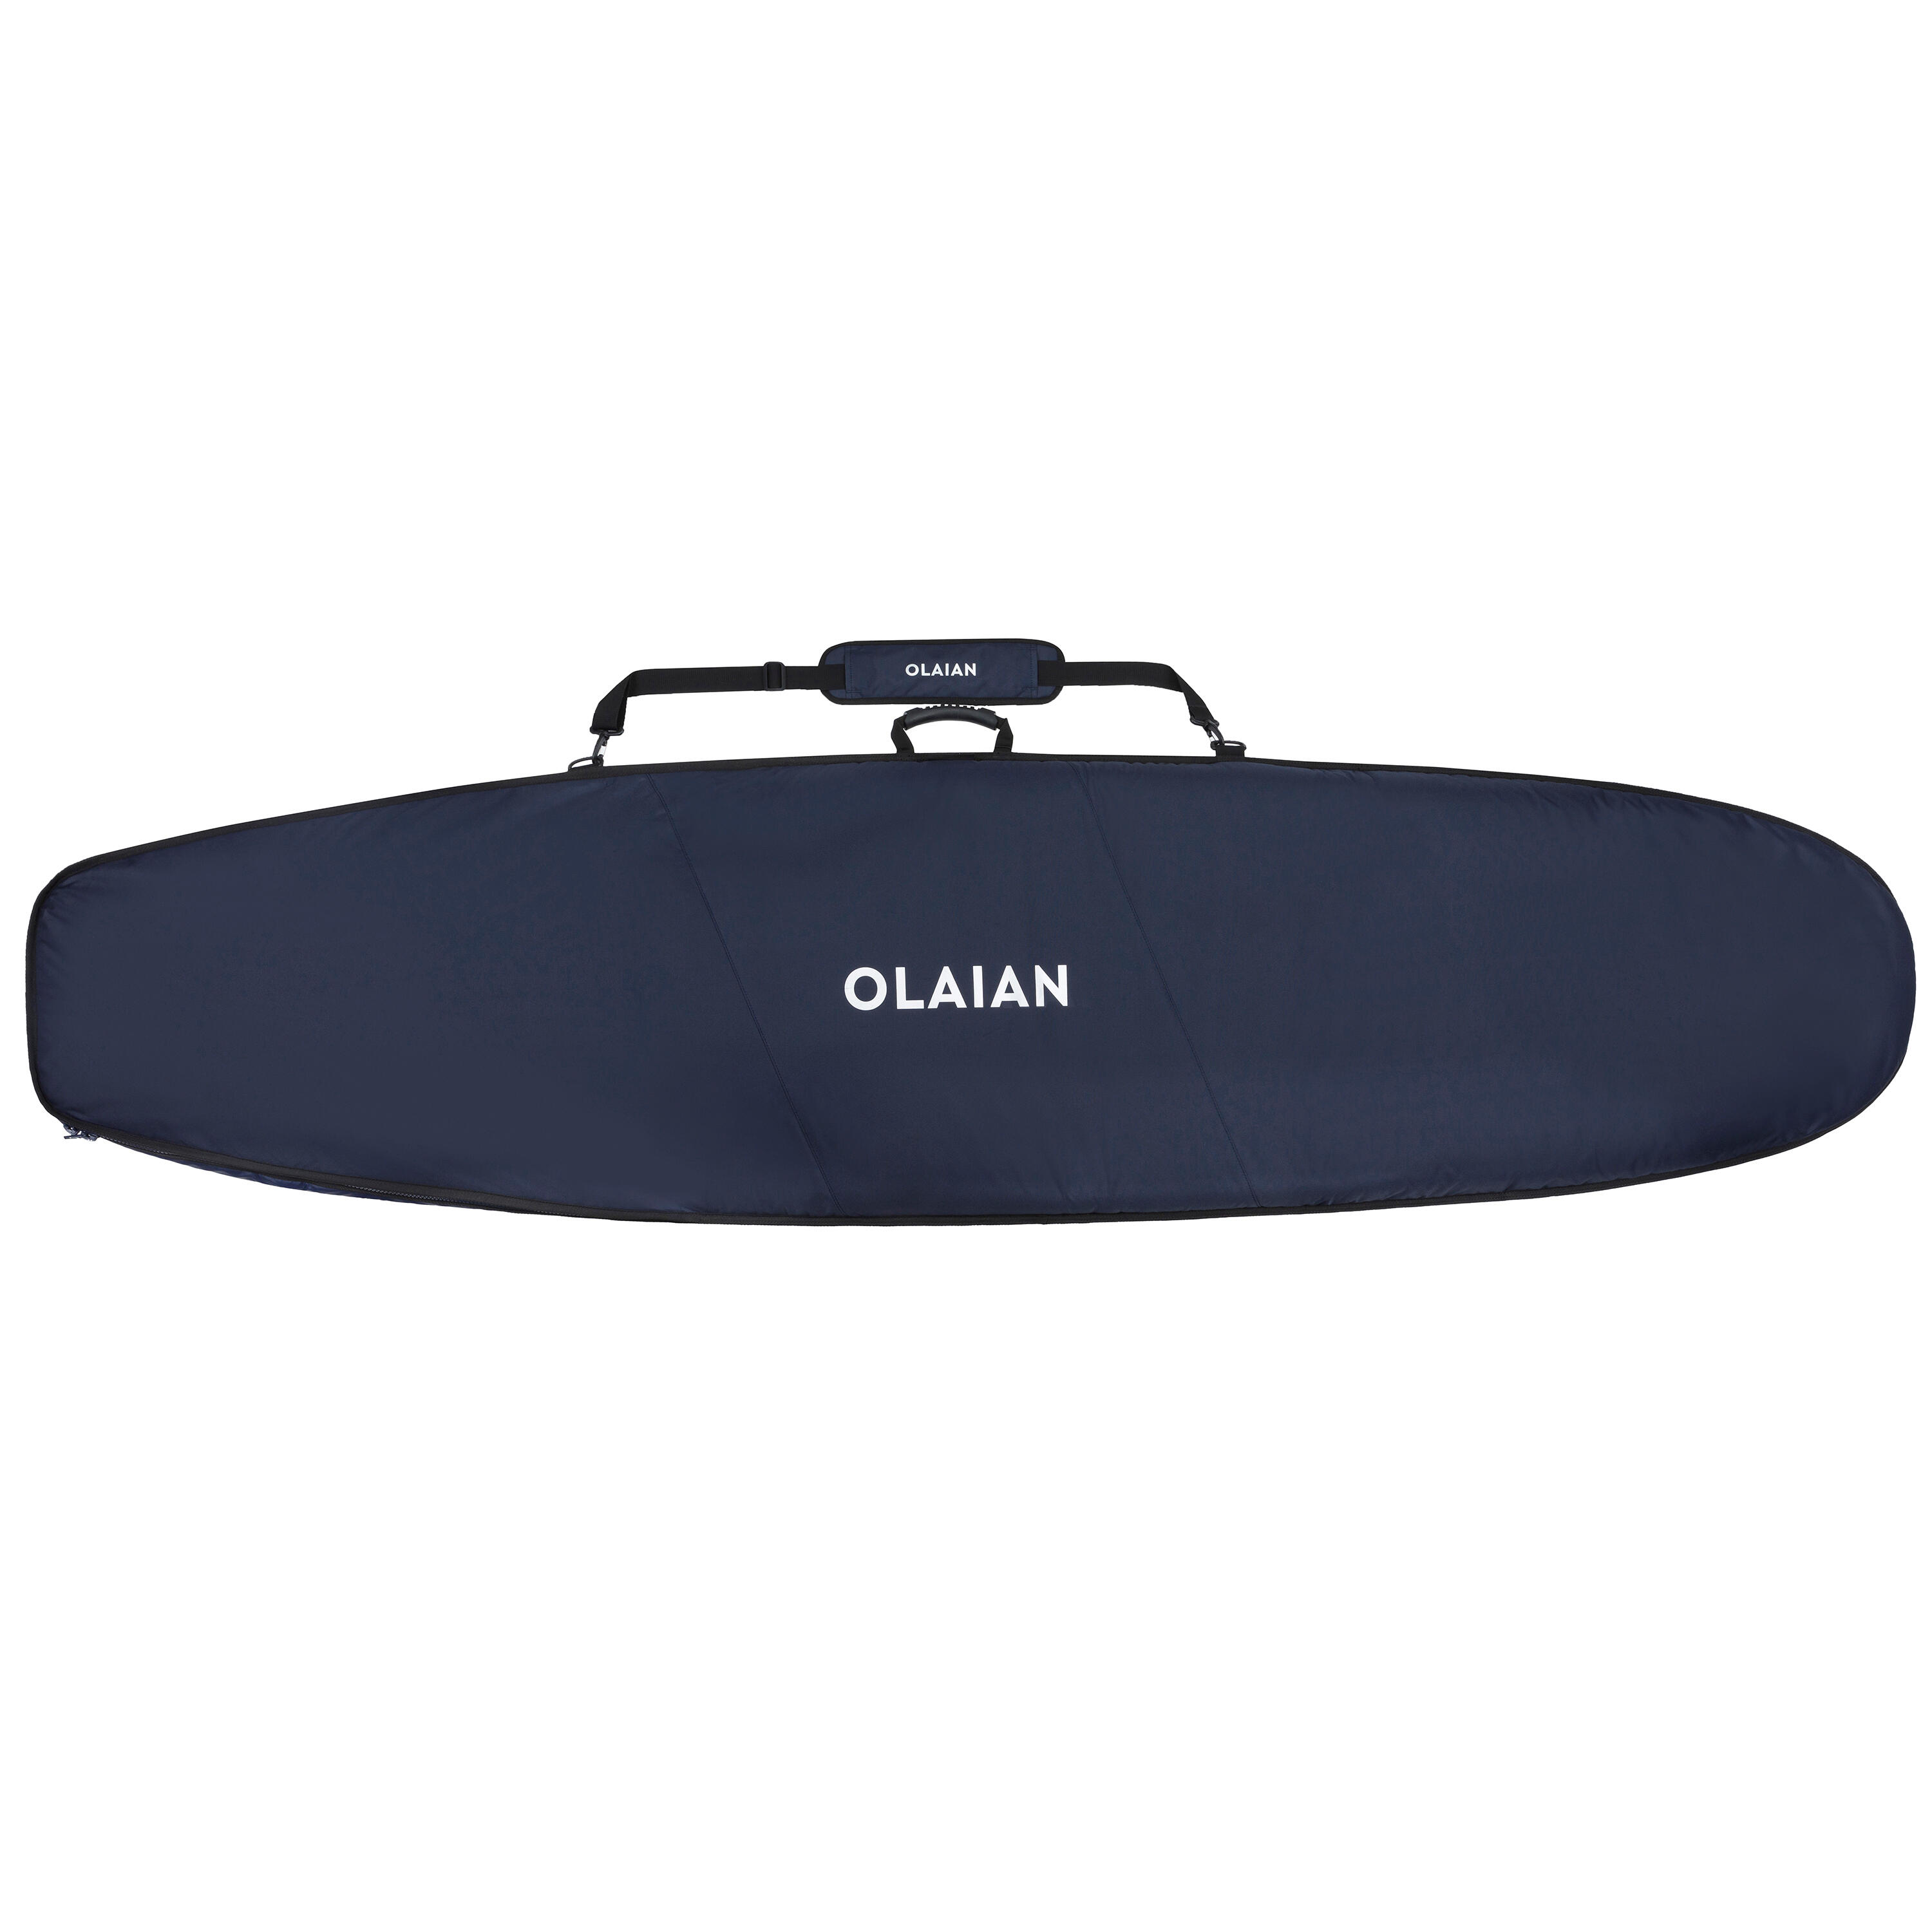 OLAIAN Boardbag Surfboard 900 max. 8'2